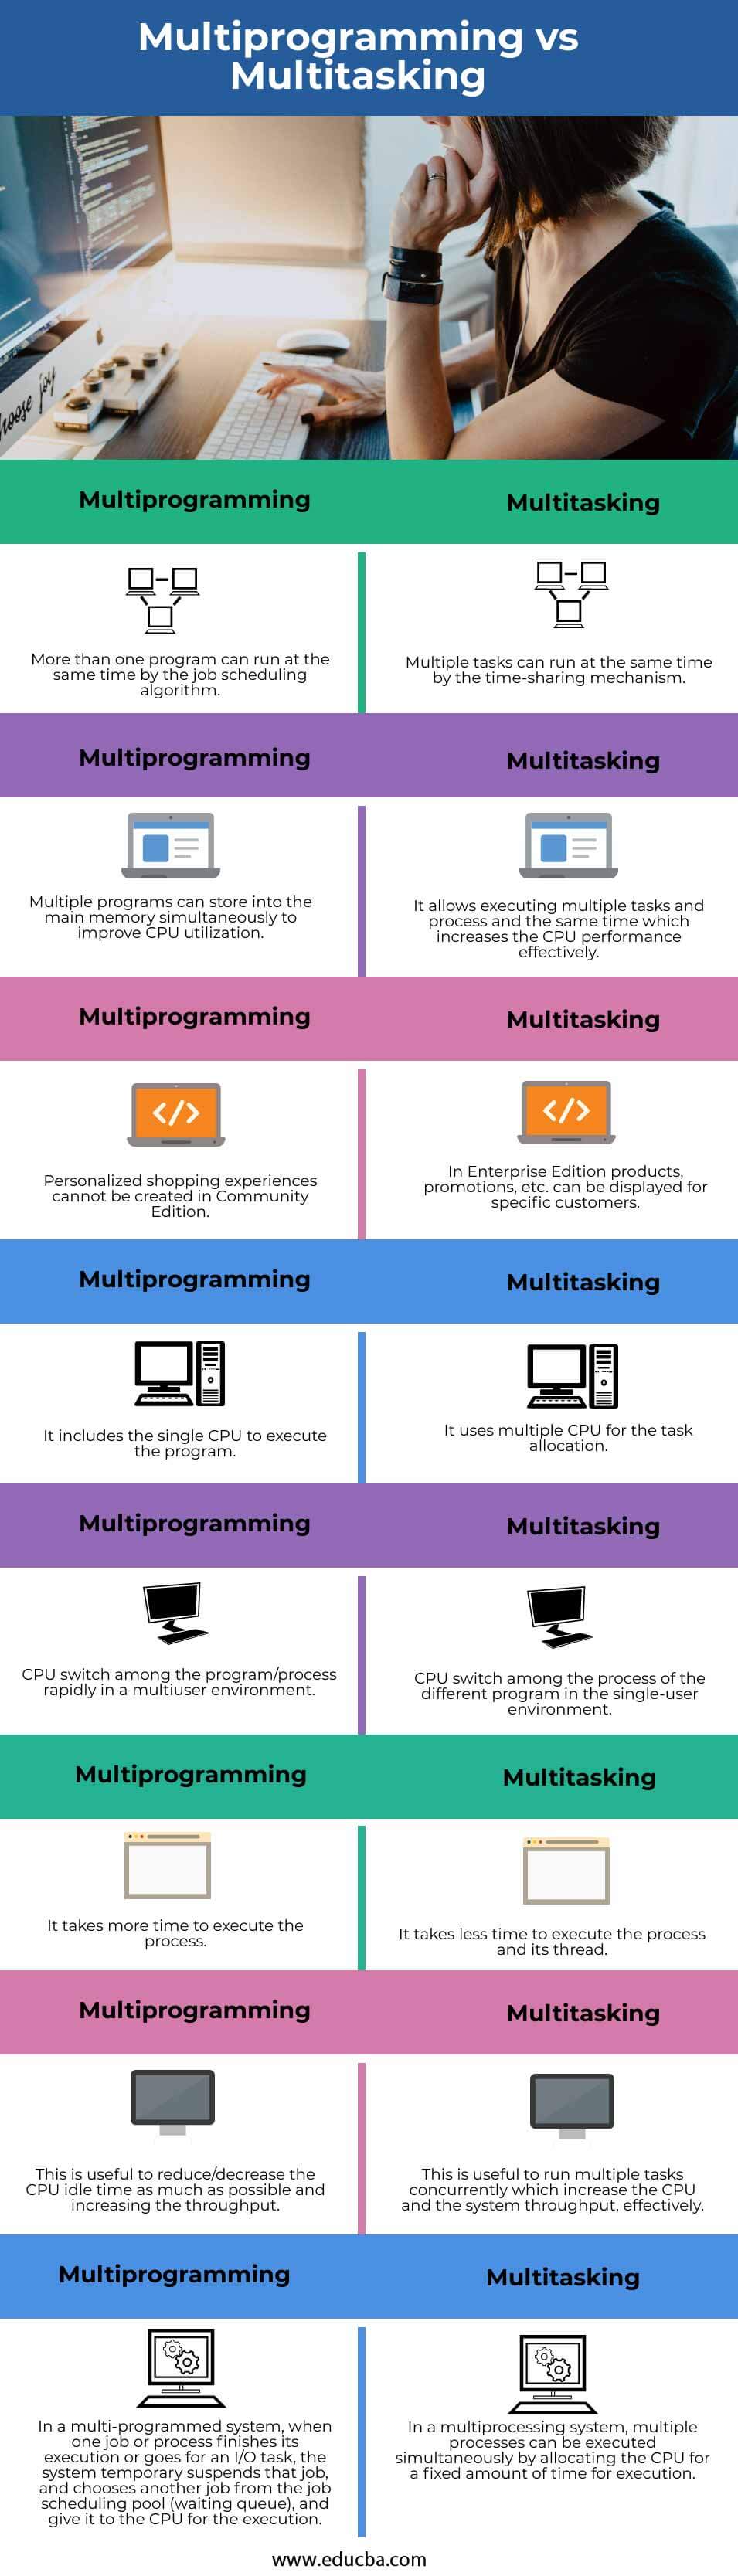 Multiprogramming-vs-Multitasking-info